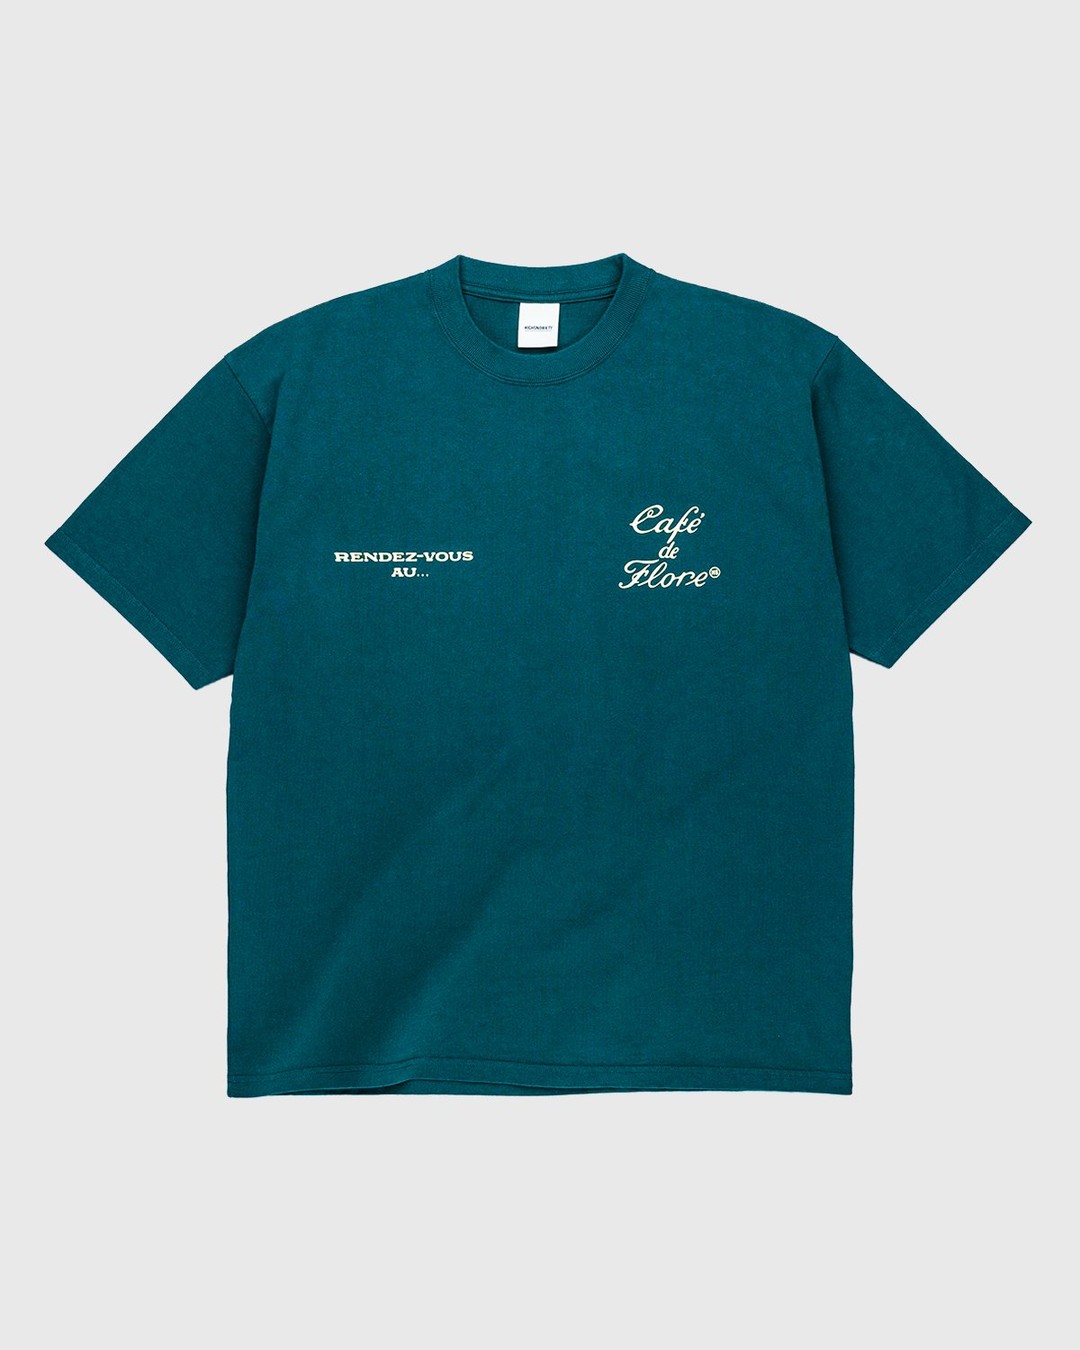 Highsnobiety – Not In Paris 3 x Café De Flore T-Shirt Green - T-Shirts - Green - Image 1